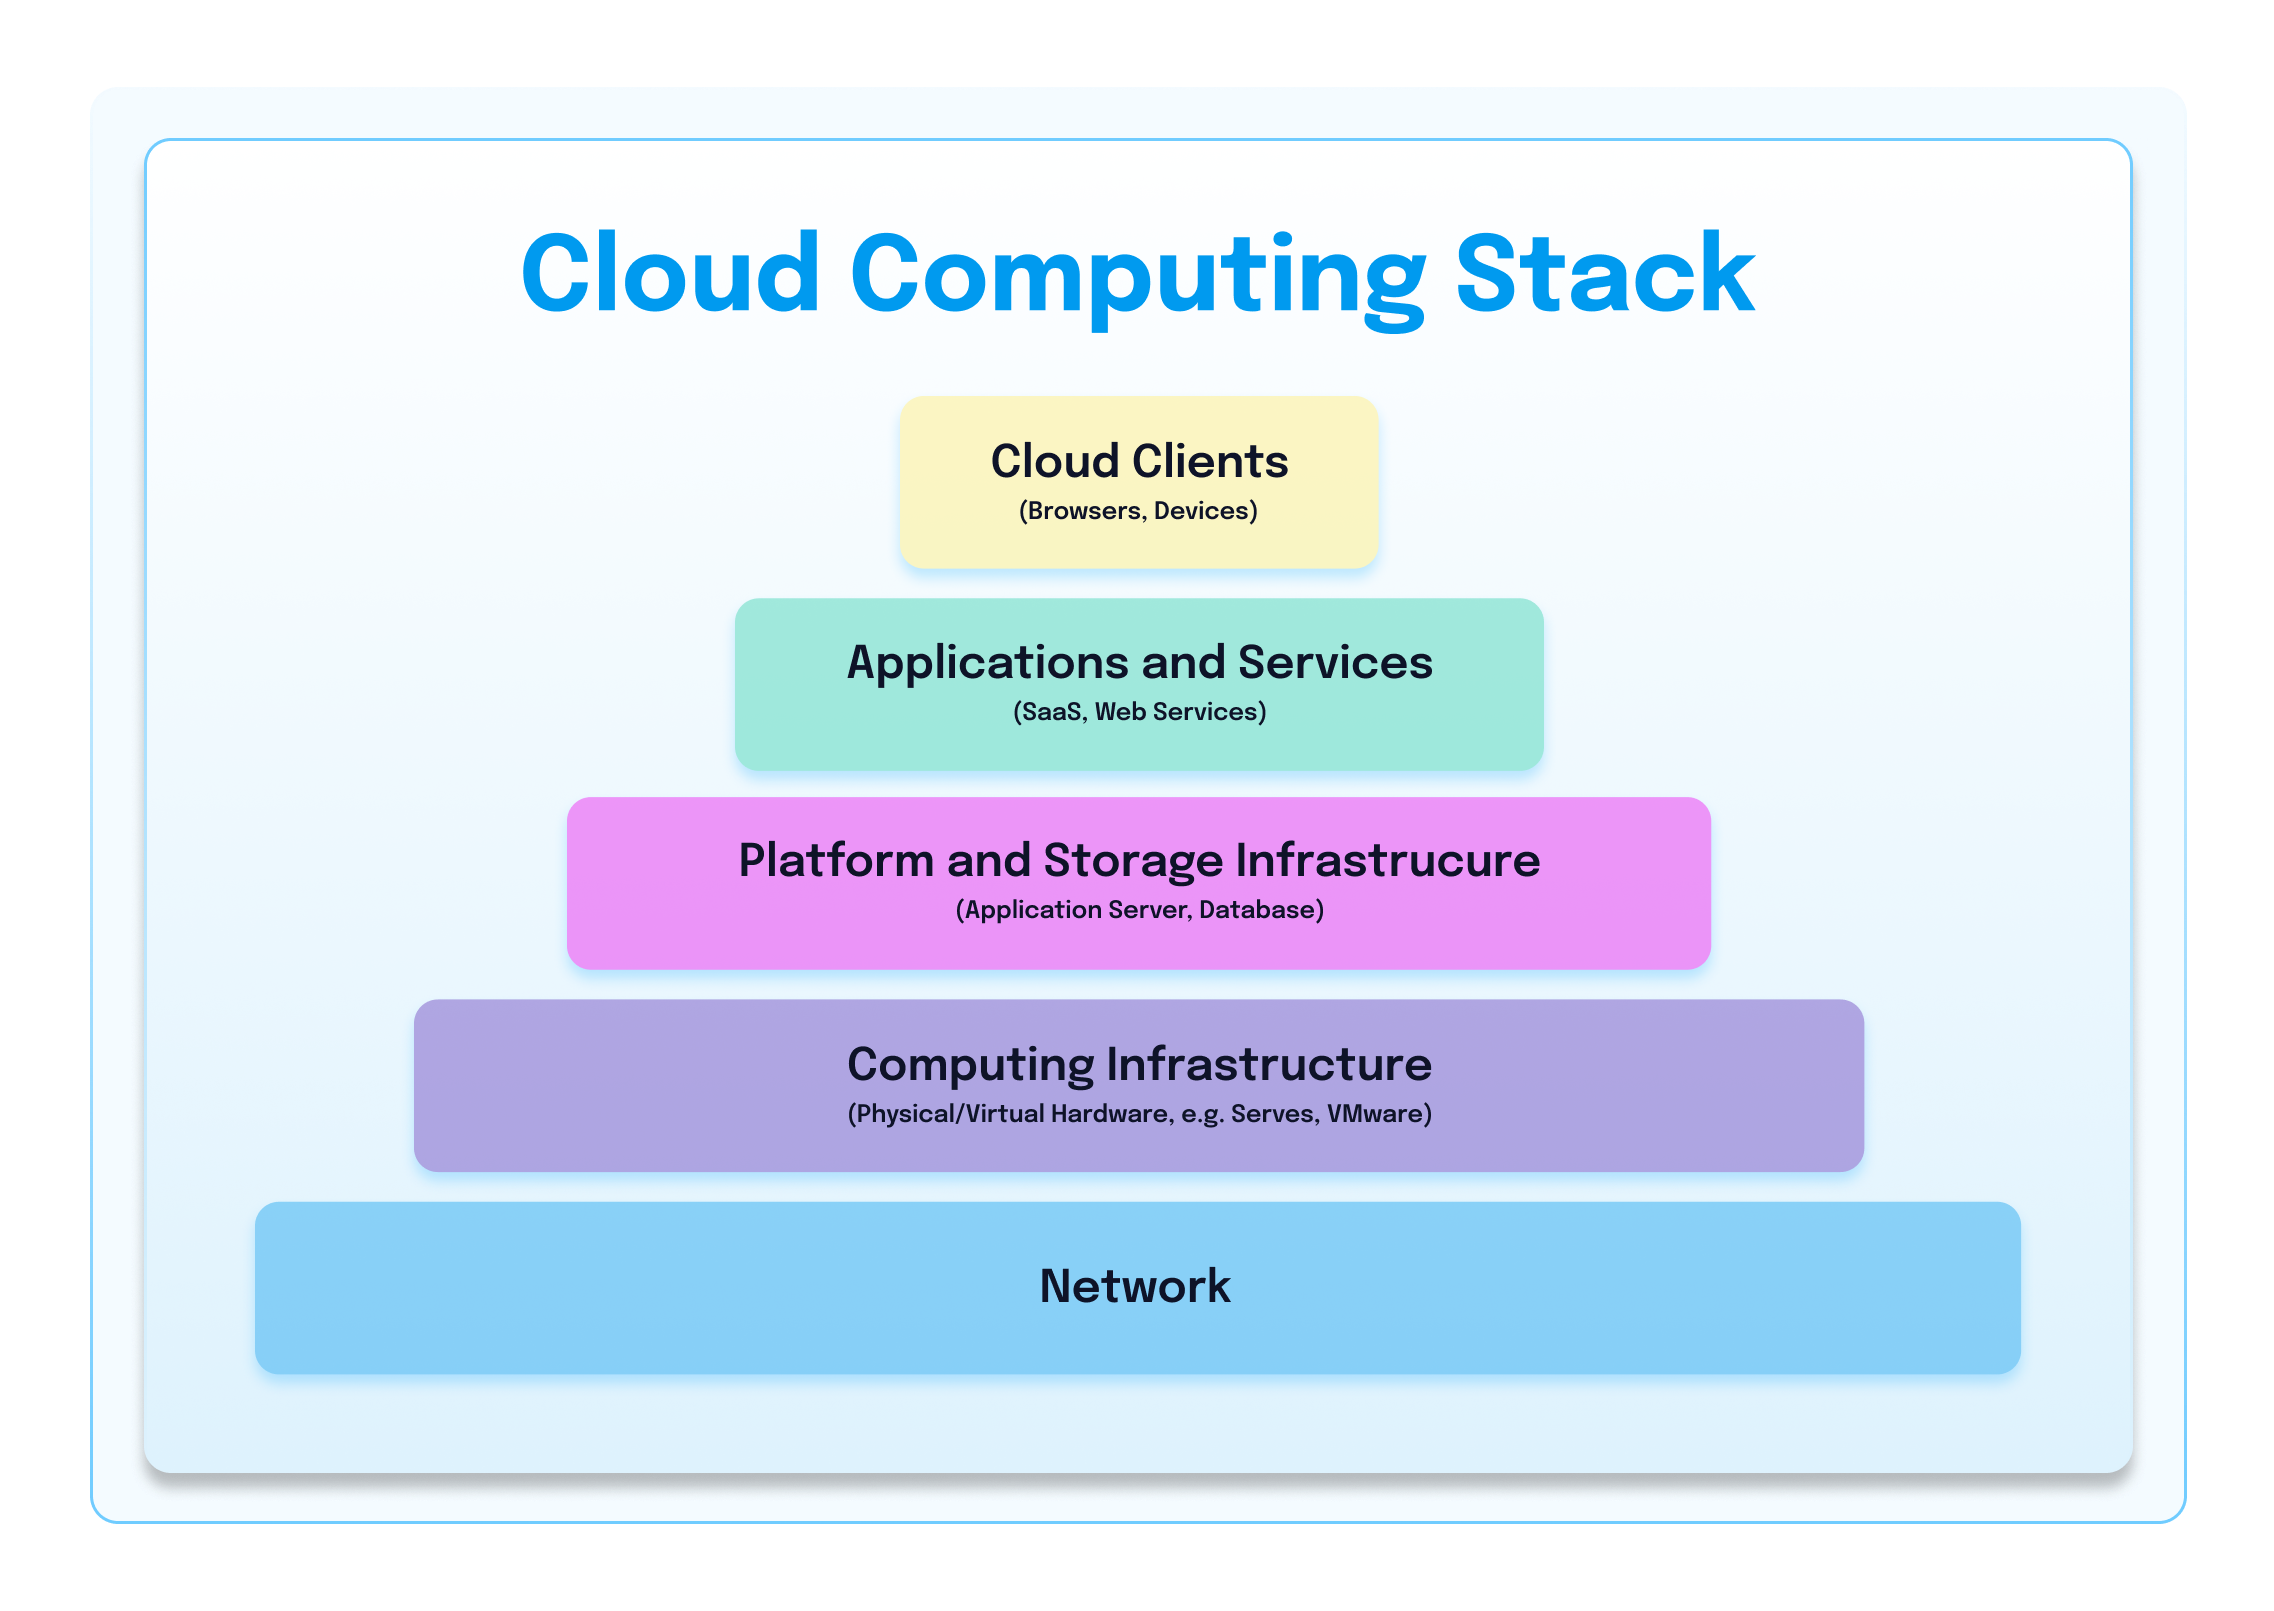 Cloud Computing Stack Pyramid Image